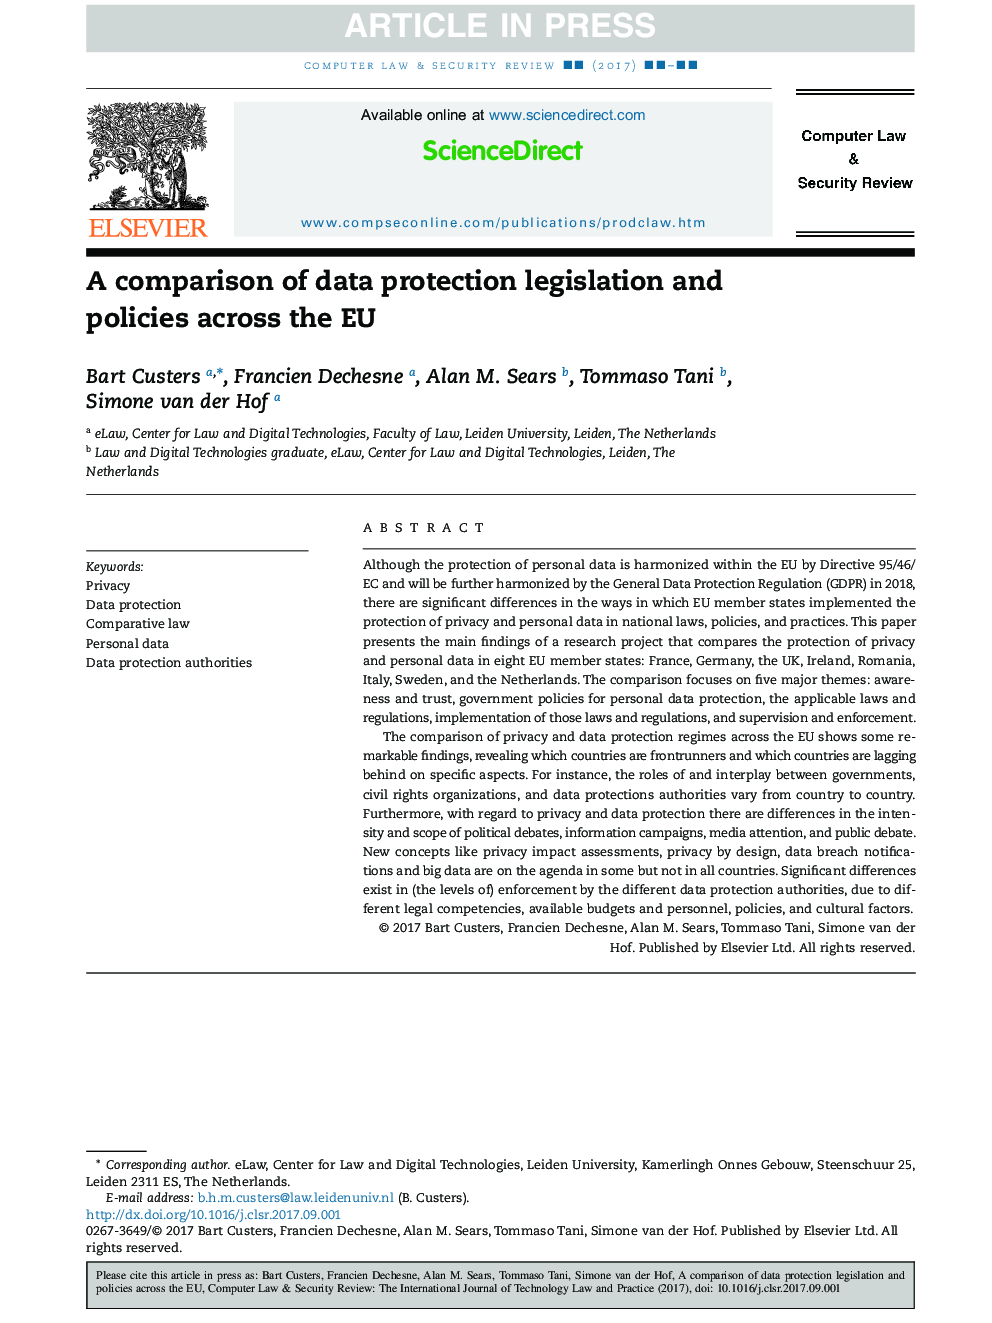 مقایسه مقررات و سیاست های حفاظت از اطلاعات در سراسر اتحادیه اروپا 